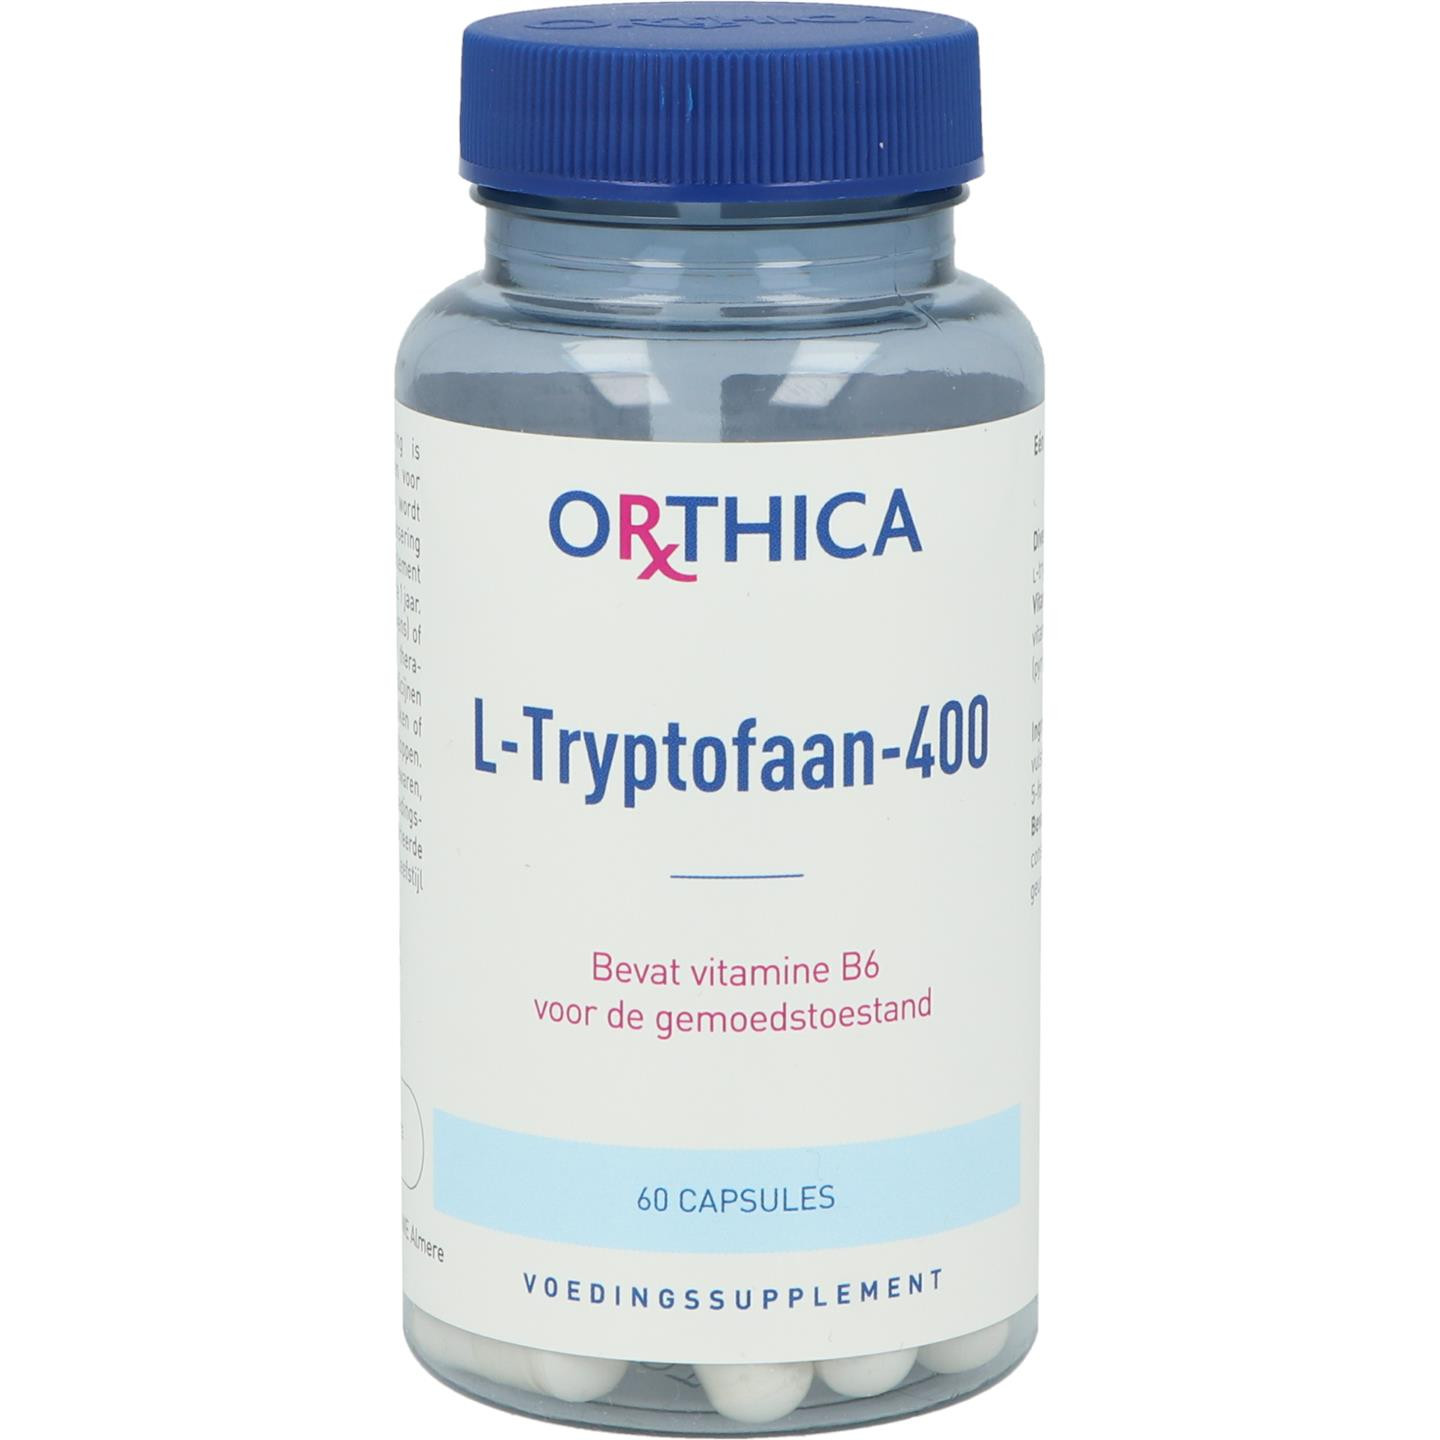 L-Tryptofaan-400